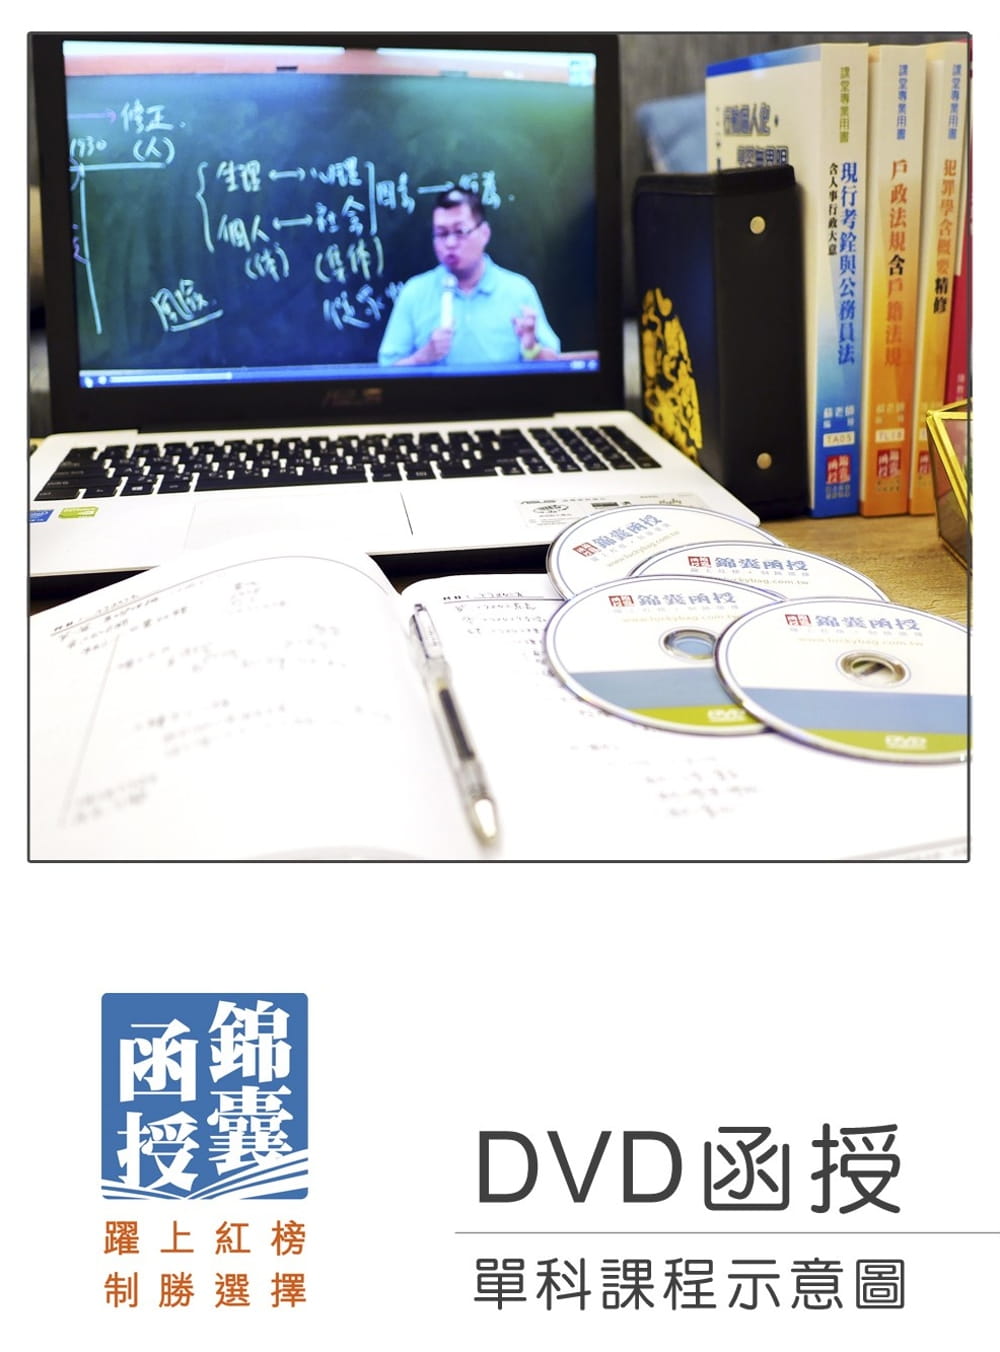 【DVD函授】郵政法暨交通安全常識(含郵政三法)：單科課程(109版)